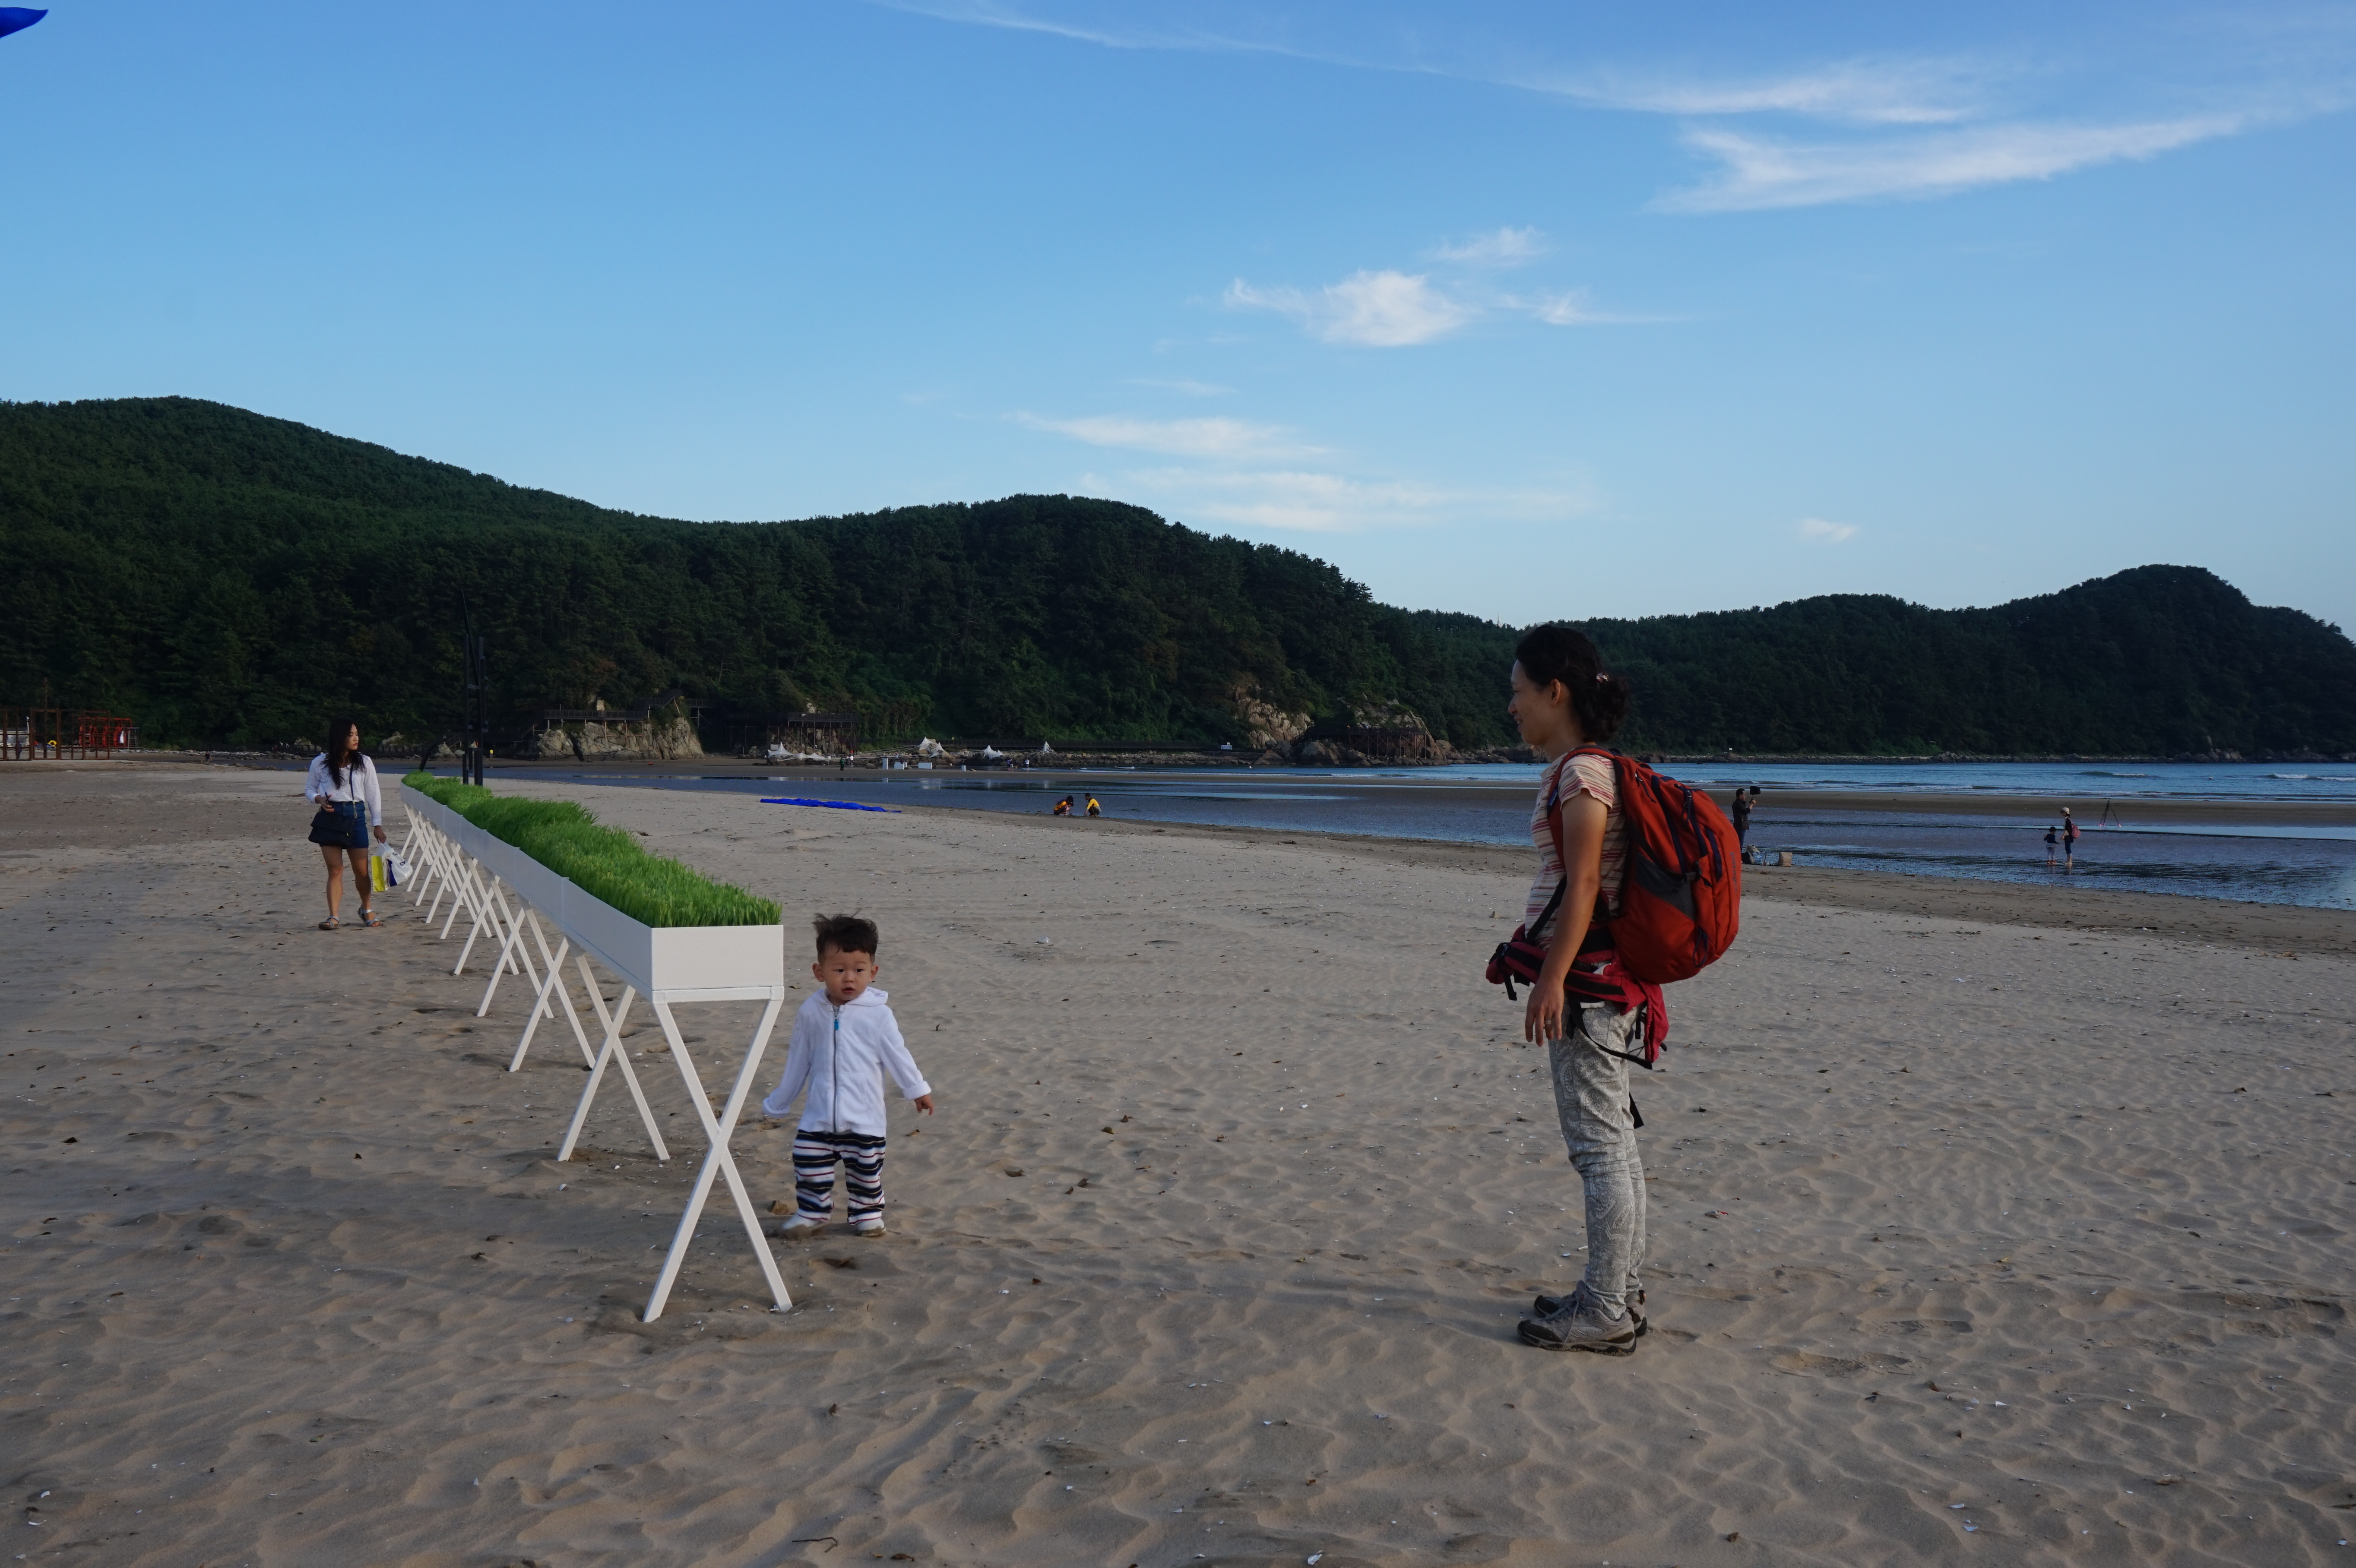 2015 바다미술제가 열리고 있는 부산 다대포의 바다와 해변에 설치된 헝가리 작가 조셉 타스나니의 작품 ‘기억의 지속’과 전원길 작가의 ‘녹색 수평선’.